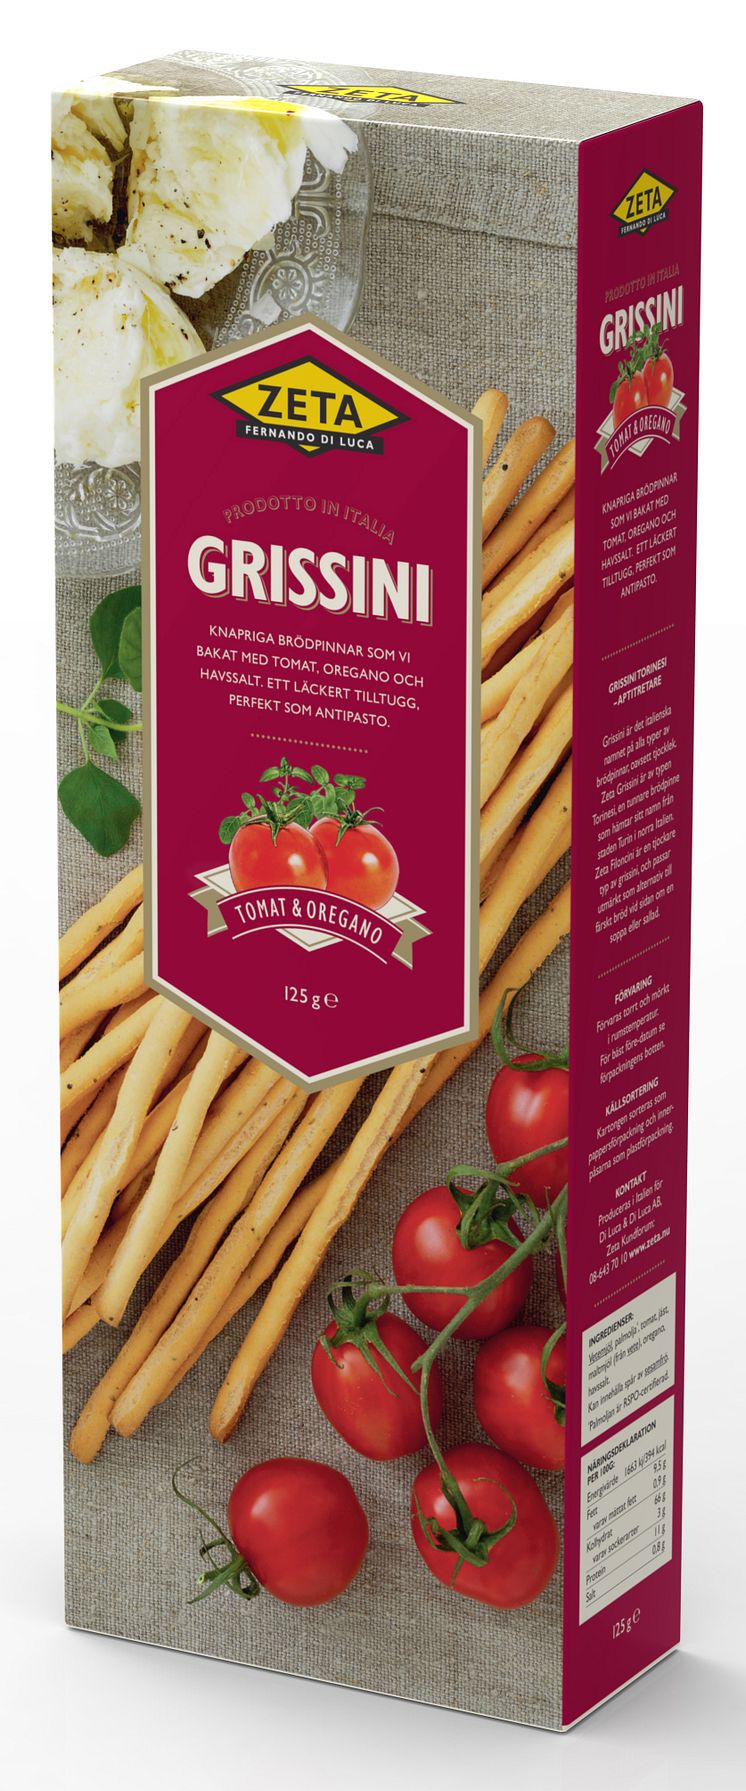 Grissini med smak av tomat och oregano, från Zeta